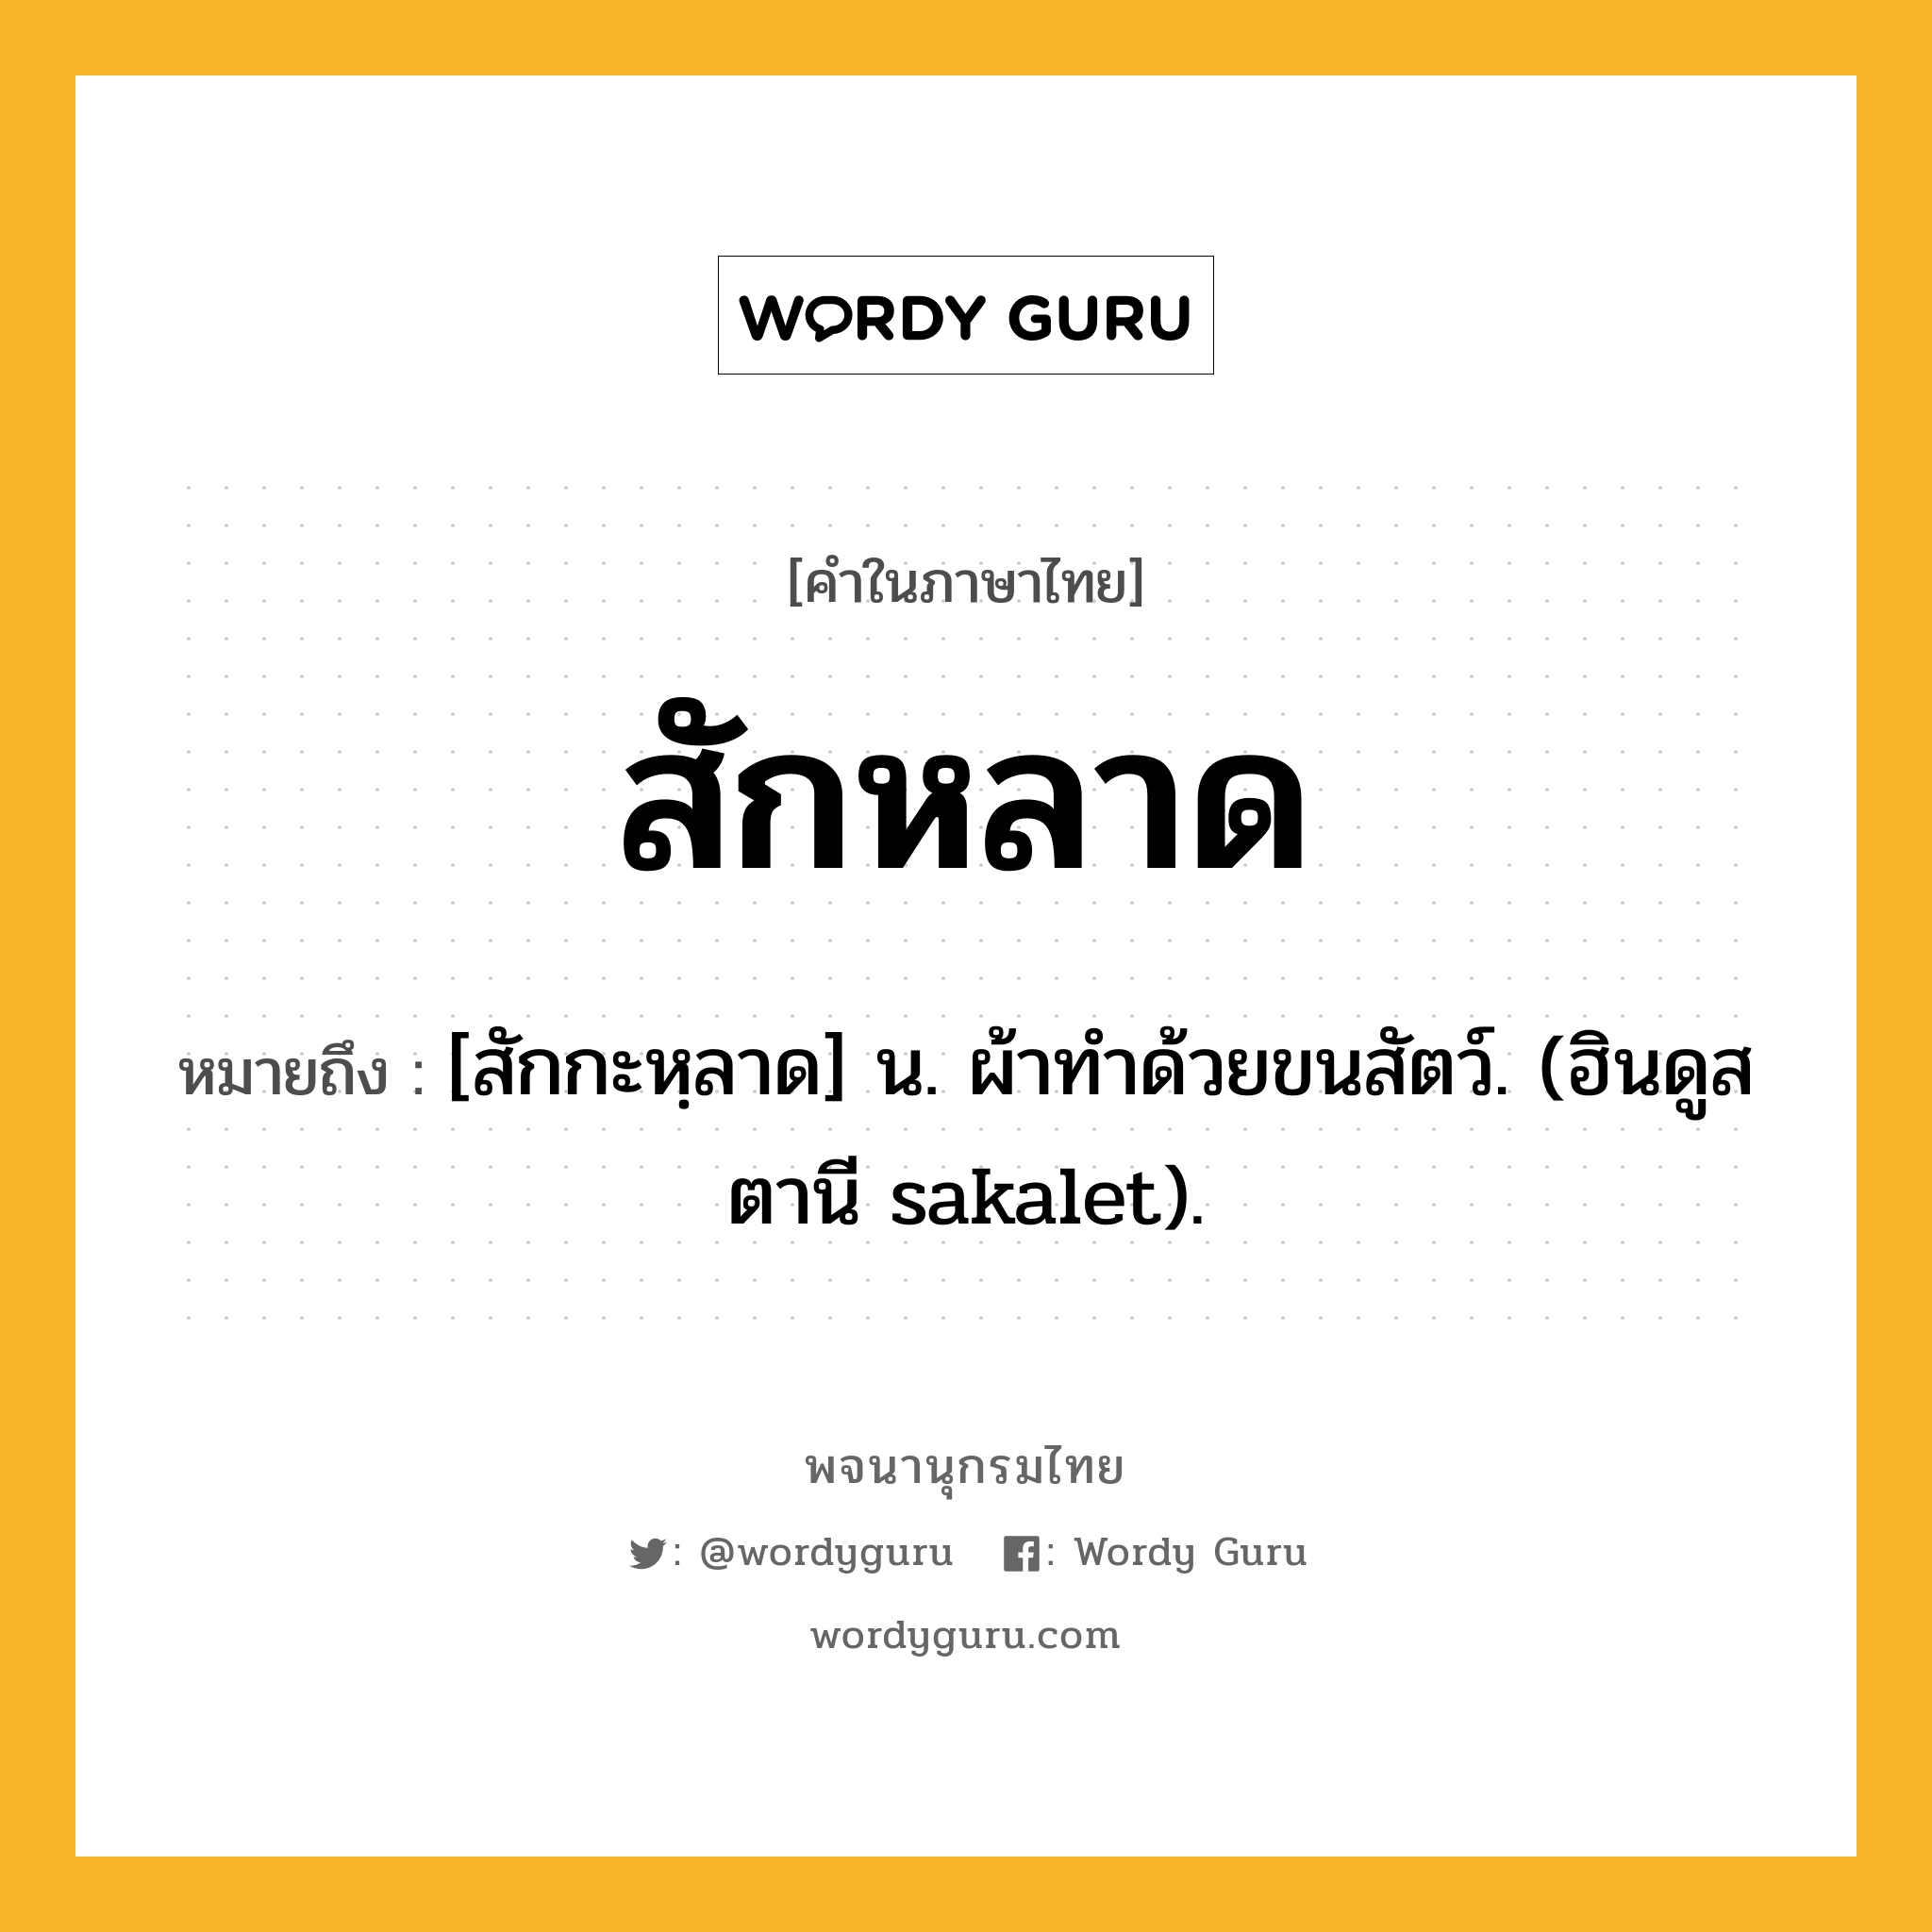 สักหลาด หมายถึงอะไร?, คำในภาษาไทย สักหลาด หมายถึง [สักกะหฺลาด] น. ผ้าทําด้วยขนสัตว์. (ฮินดูสตานี sakalet).